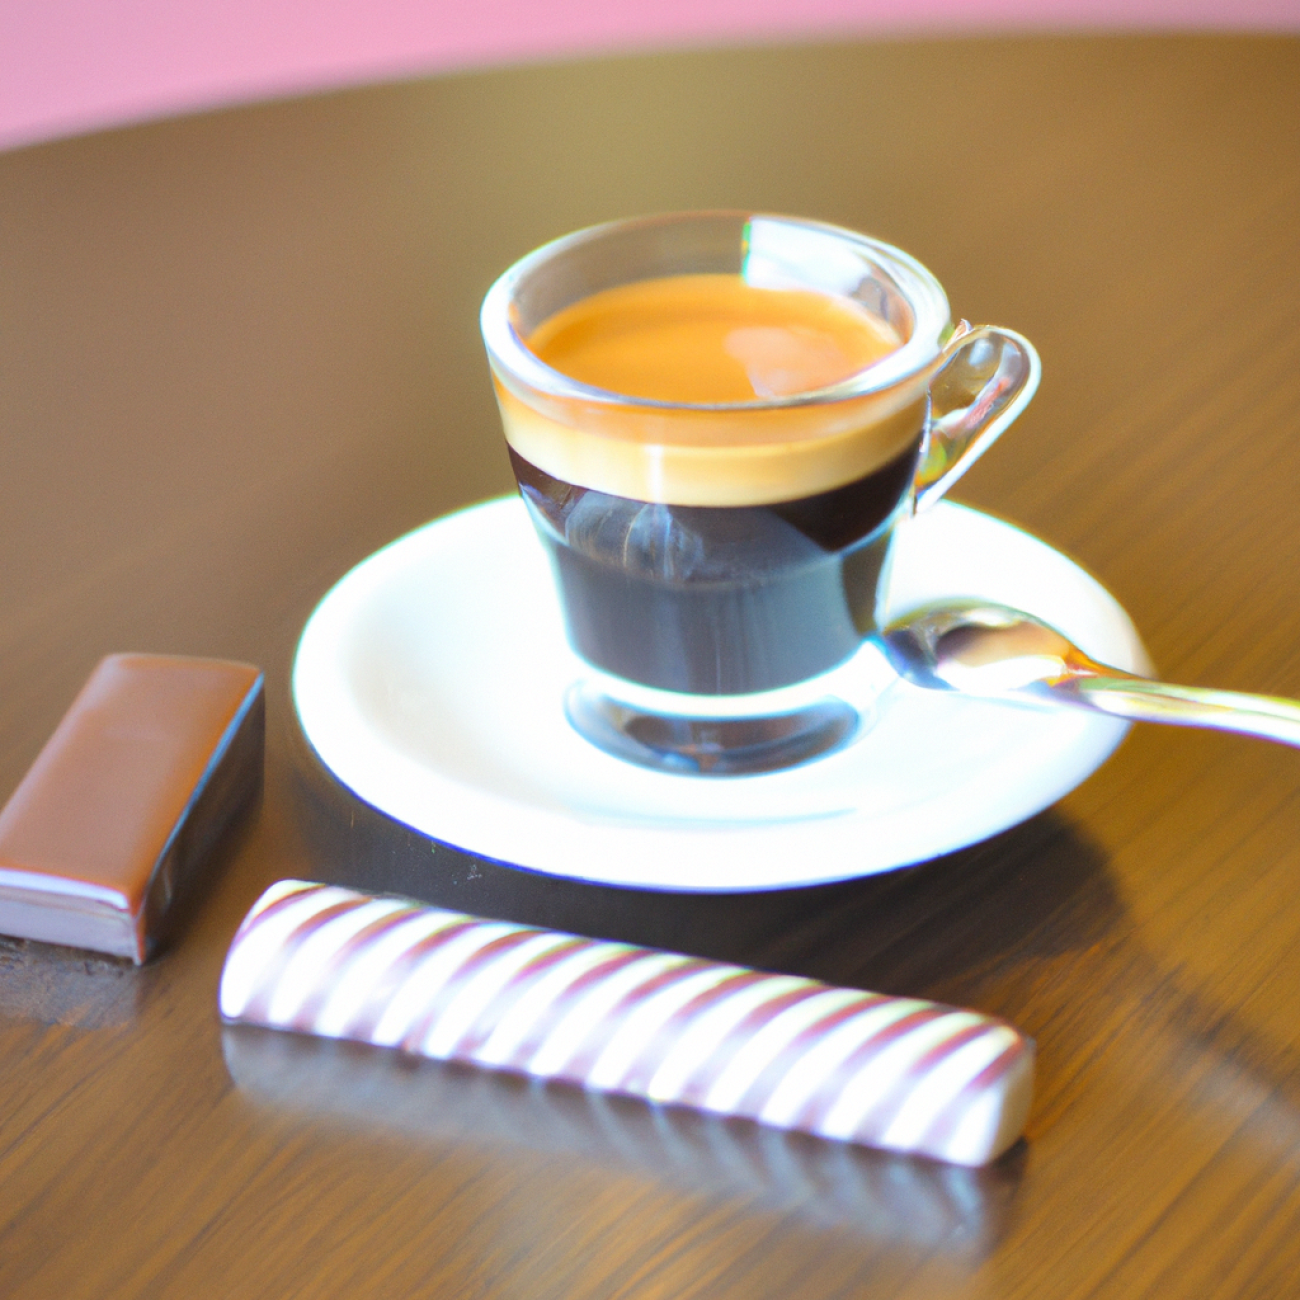 10. Café Letka: Skrytý Poklad s Vynikající Kávou